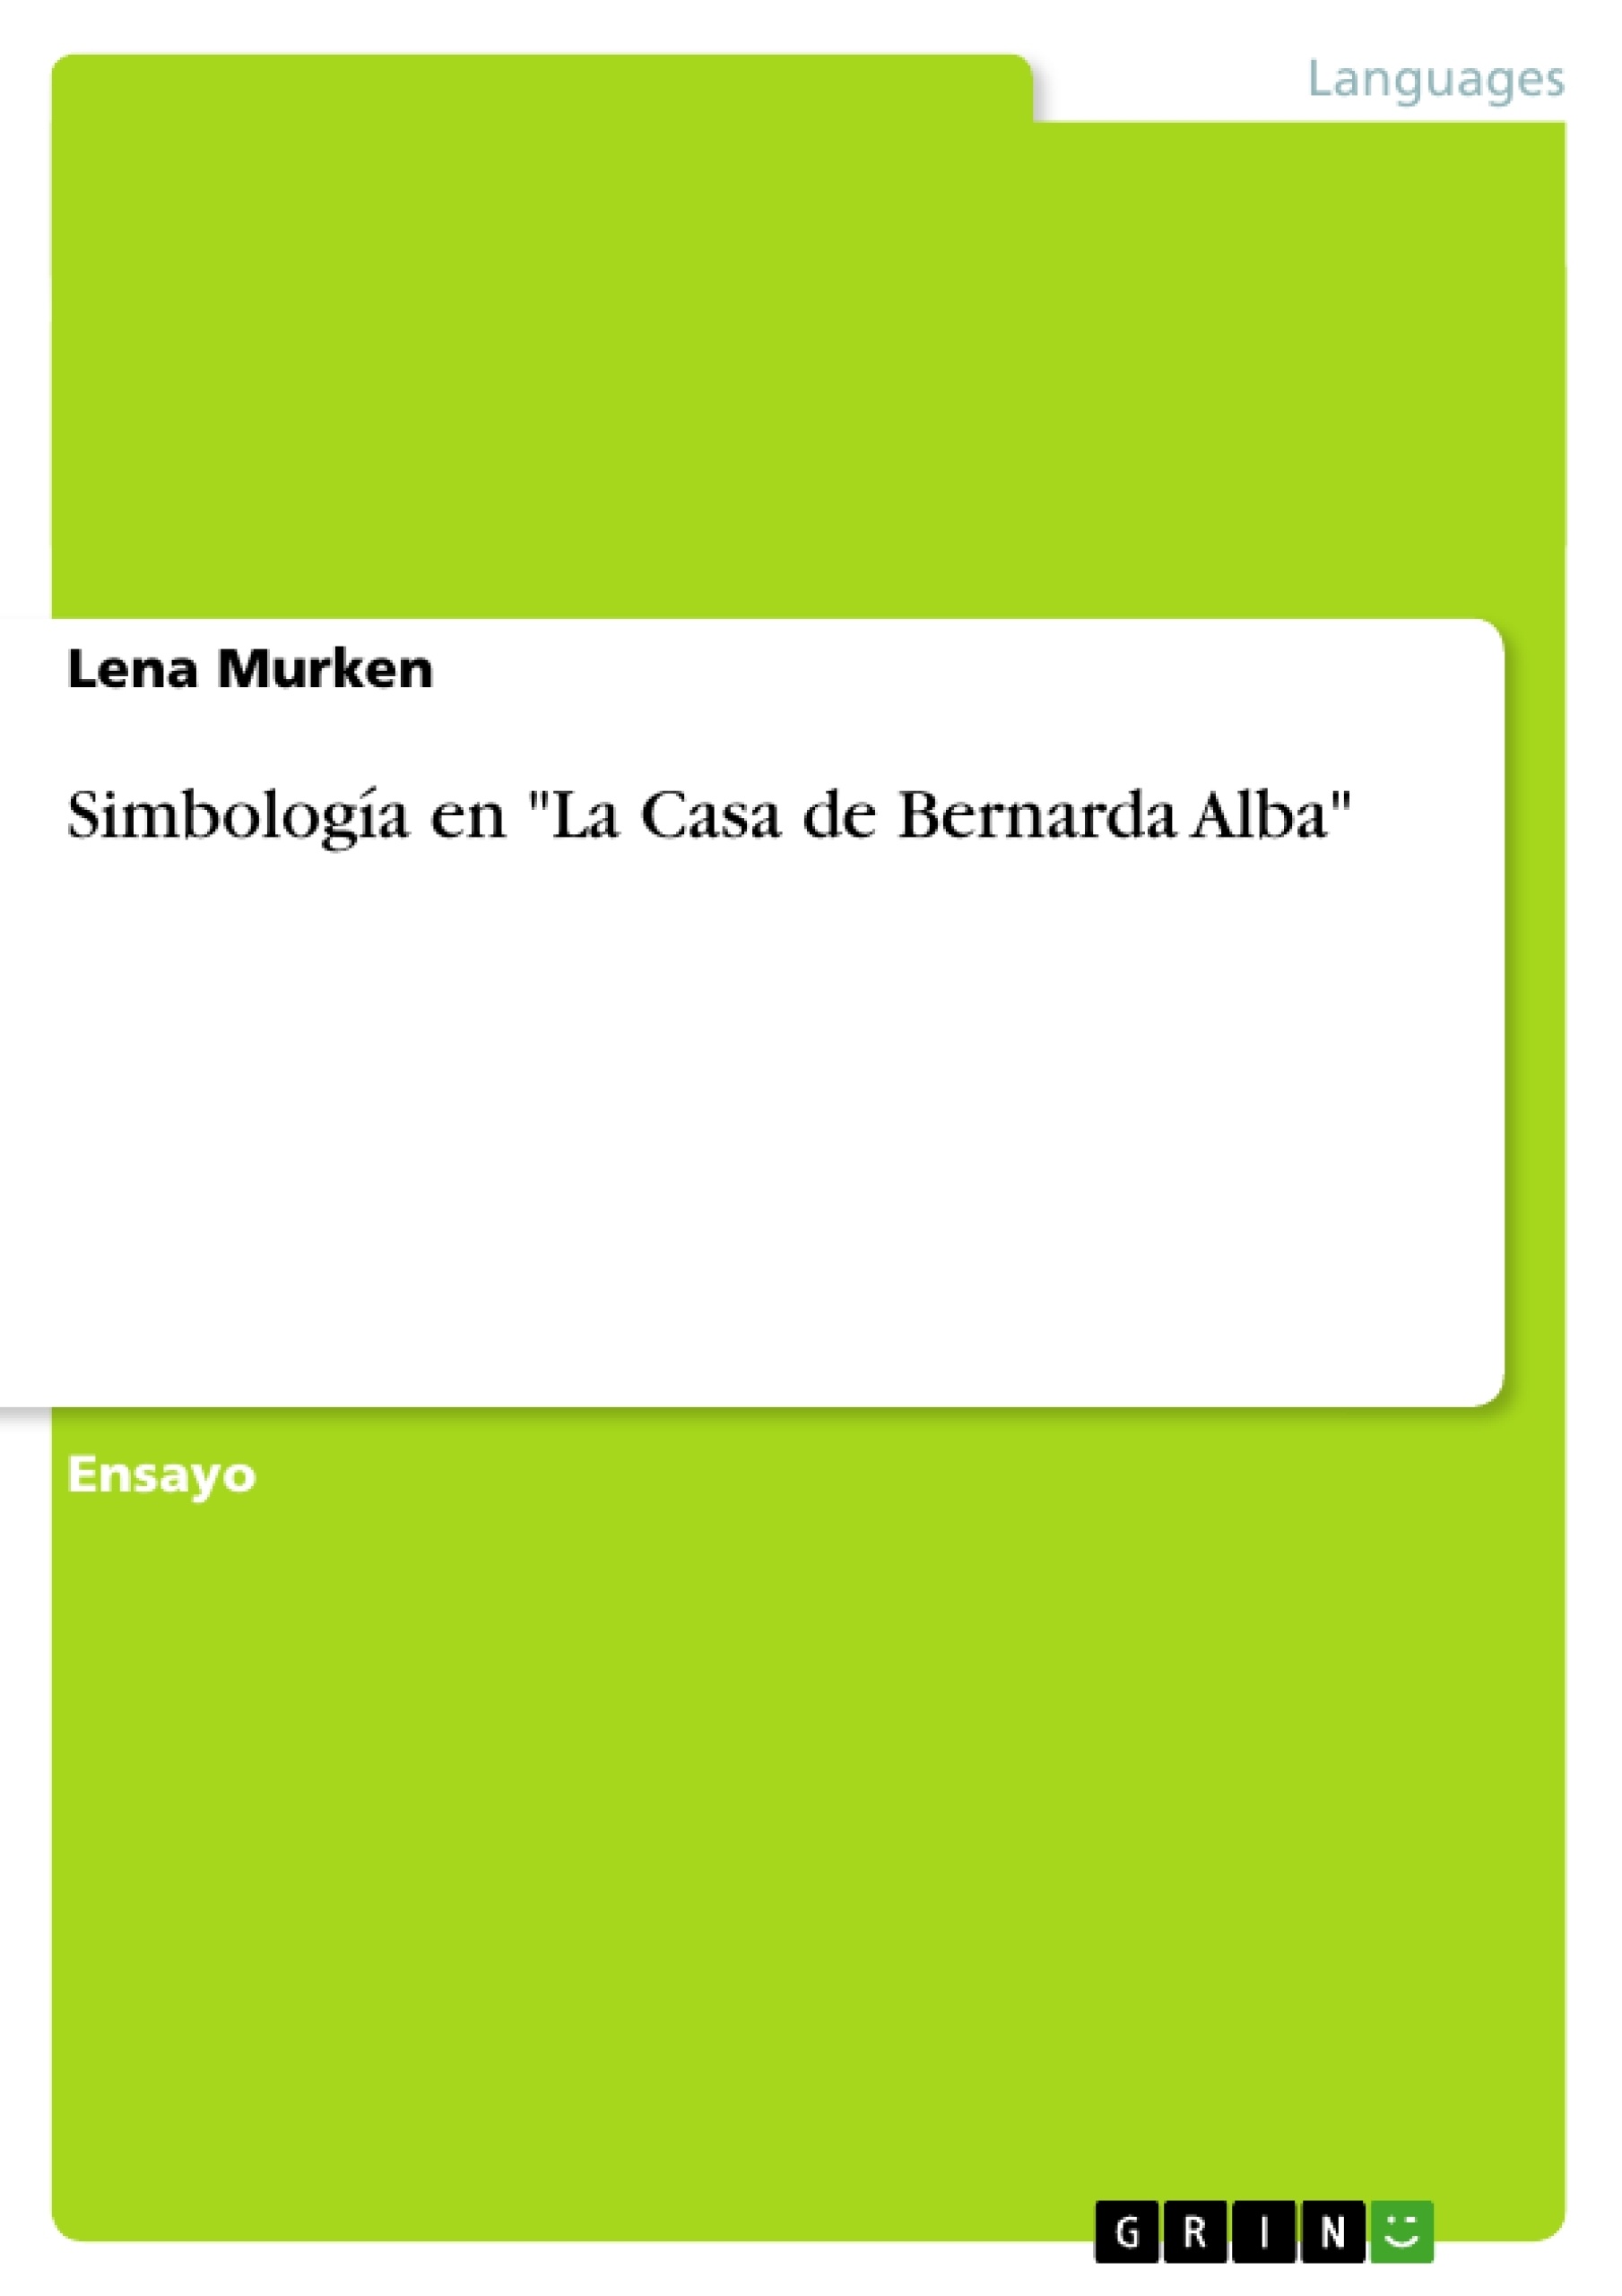 Titre: Simbología en "La Casa de Bernarda Alba"